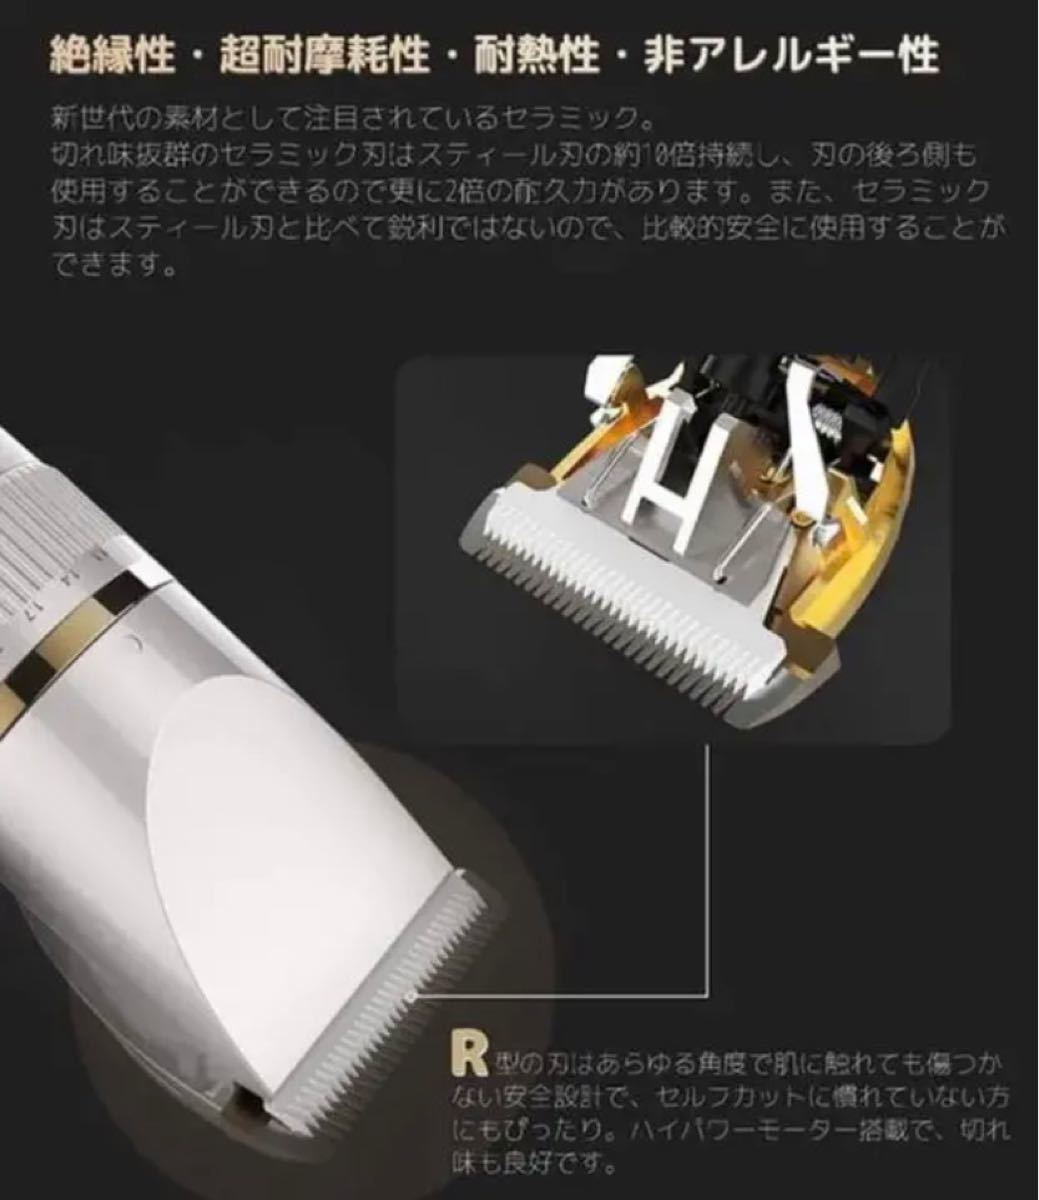 電動バリカン ヘアカッター ヘア カット USB充電 日本語説明書付き